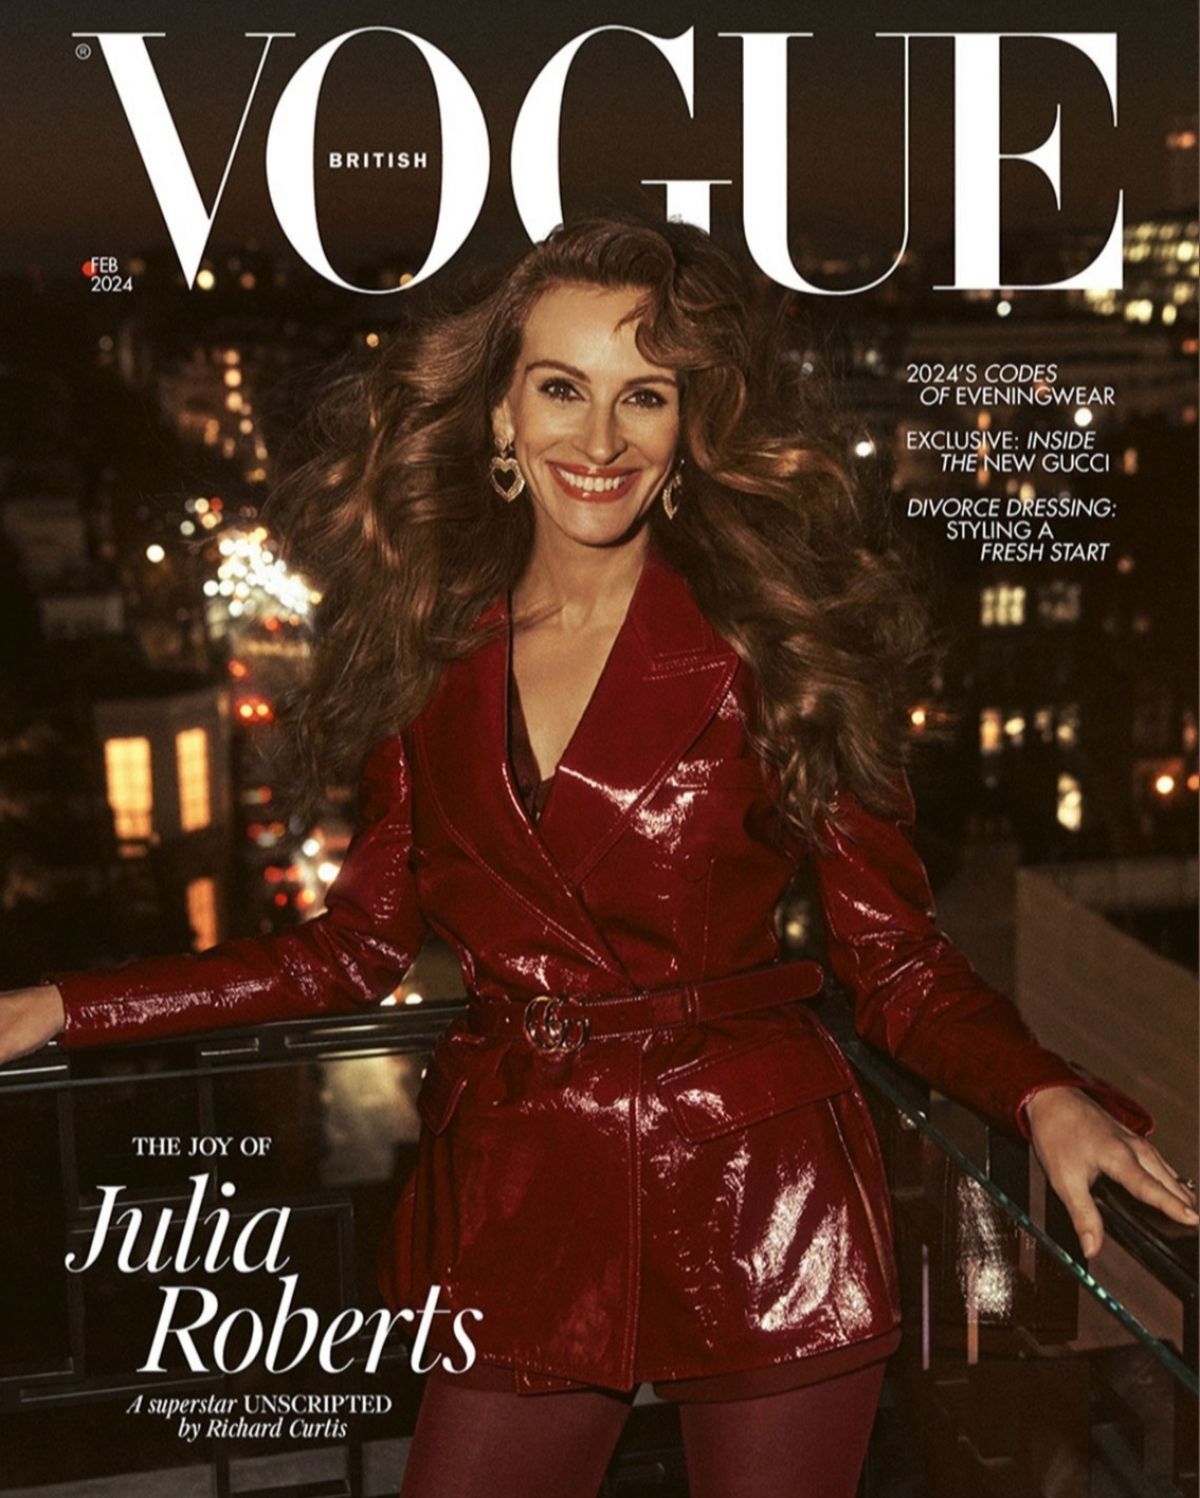 Джулия Робертс отправилась в дорогой отель для съёмок в журнале Vogue